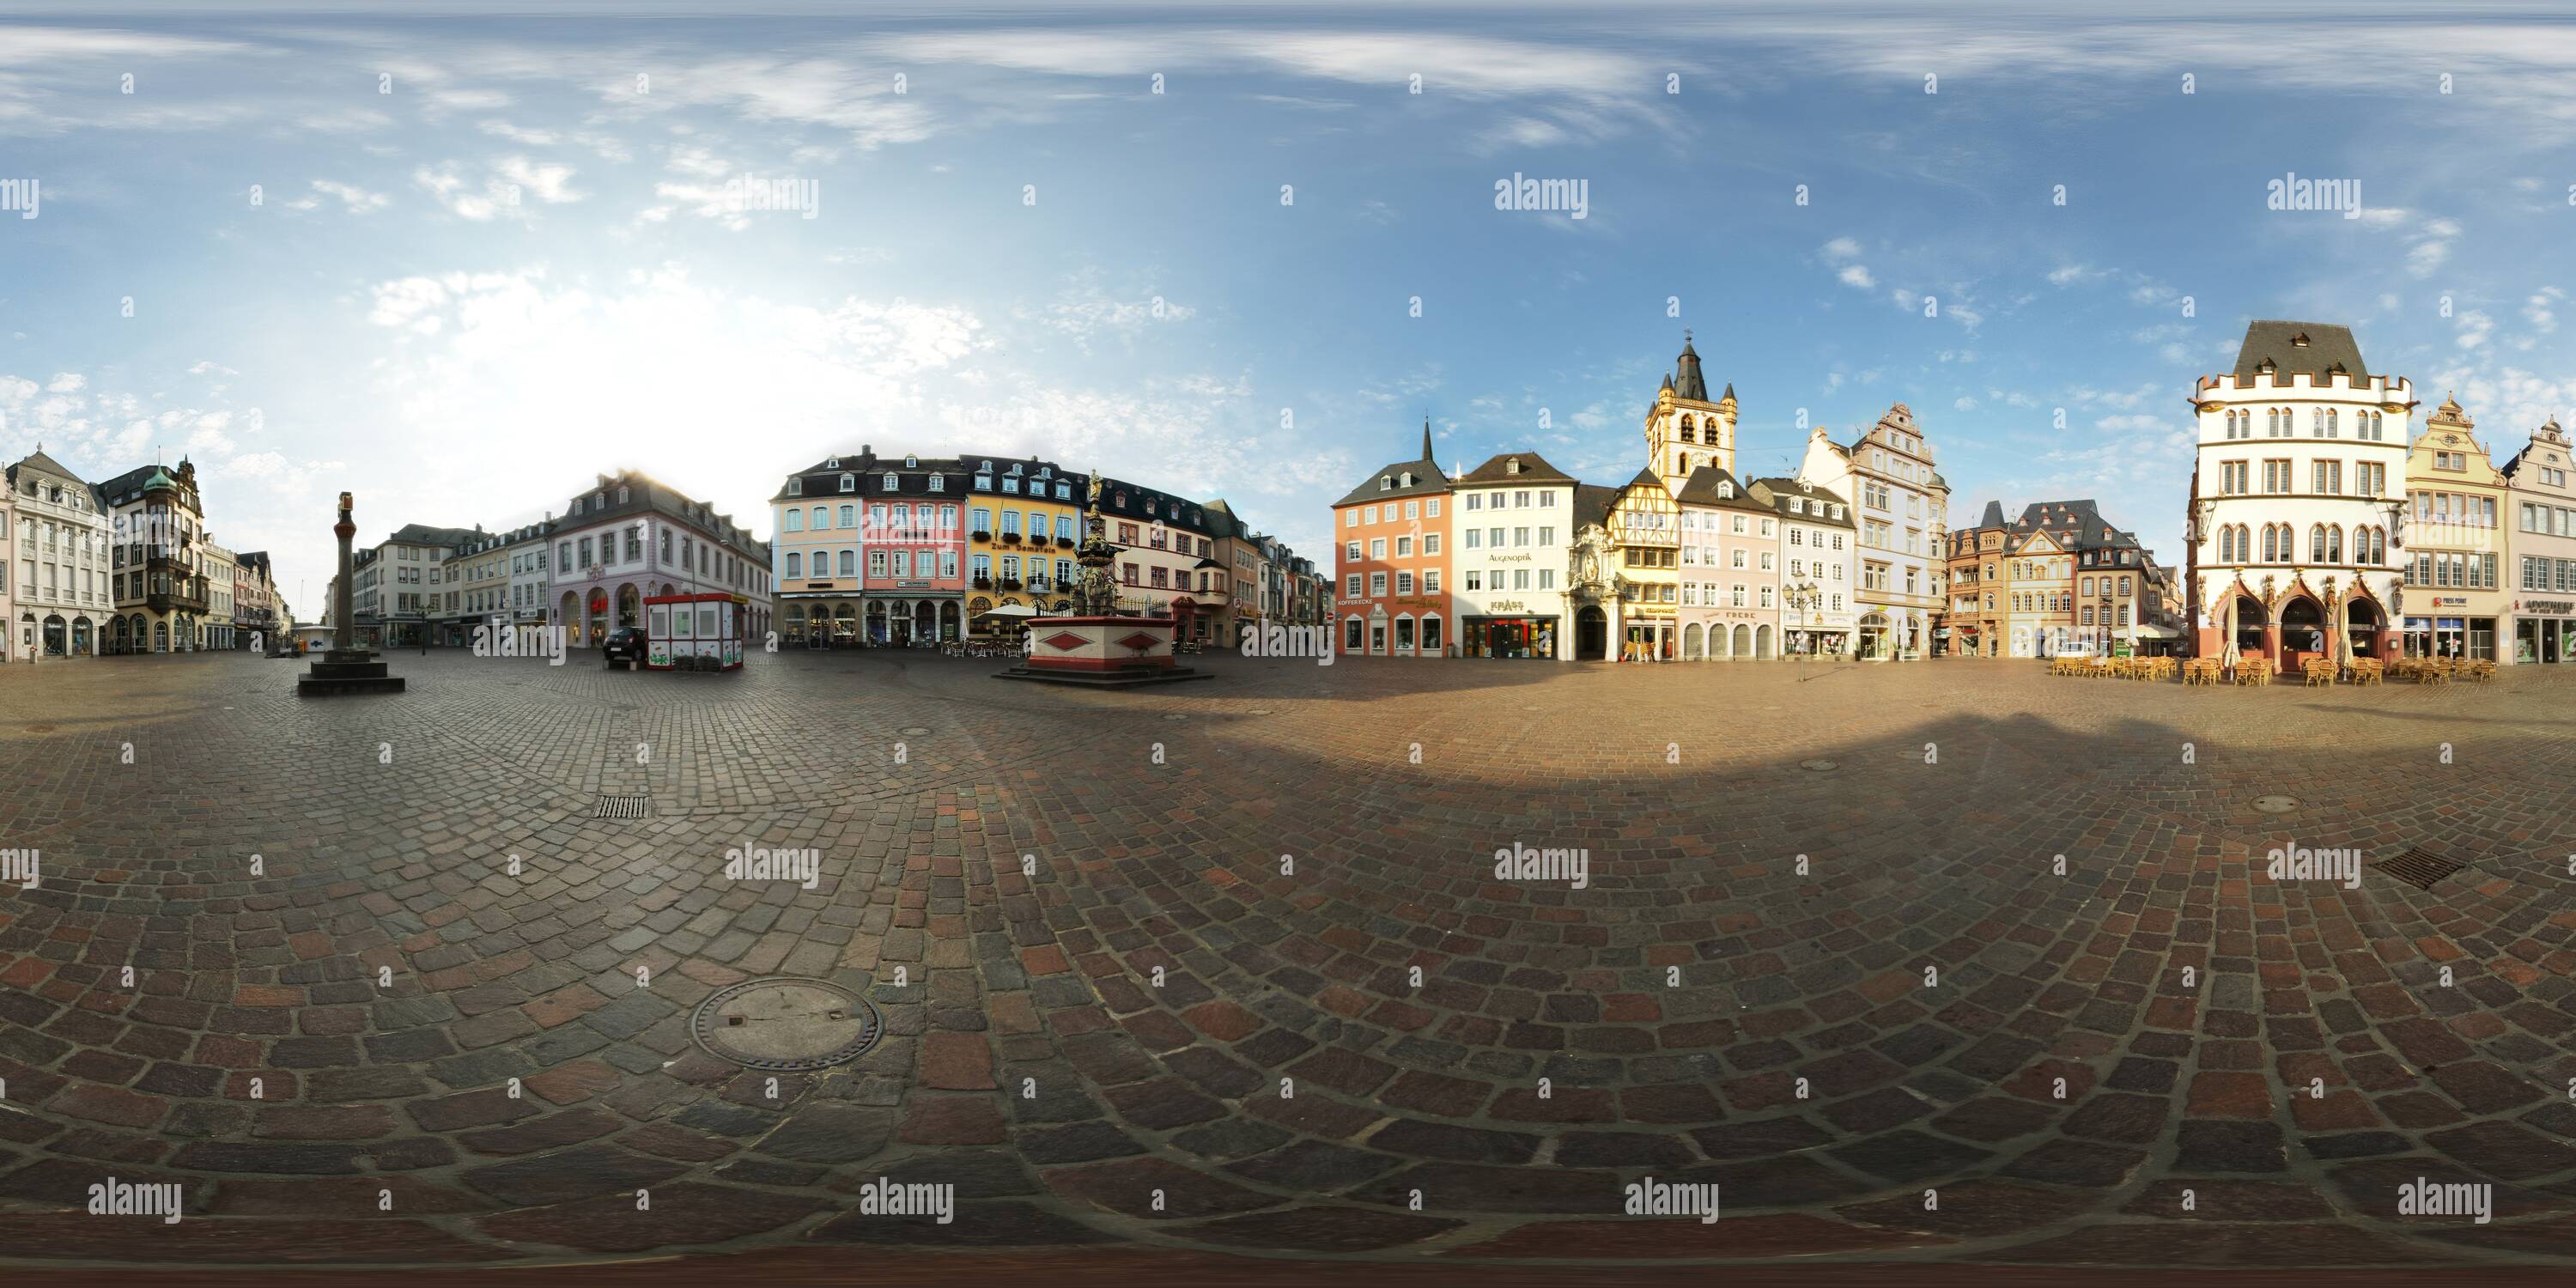 Visualizzazione panoramica a 360 gradi di Marktplatz a Treviri